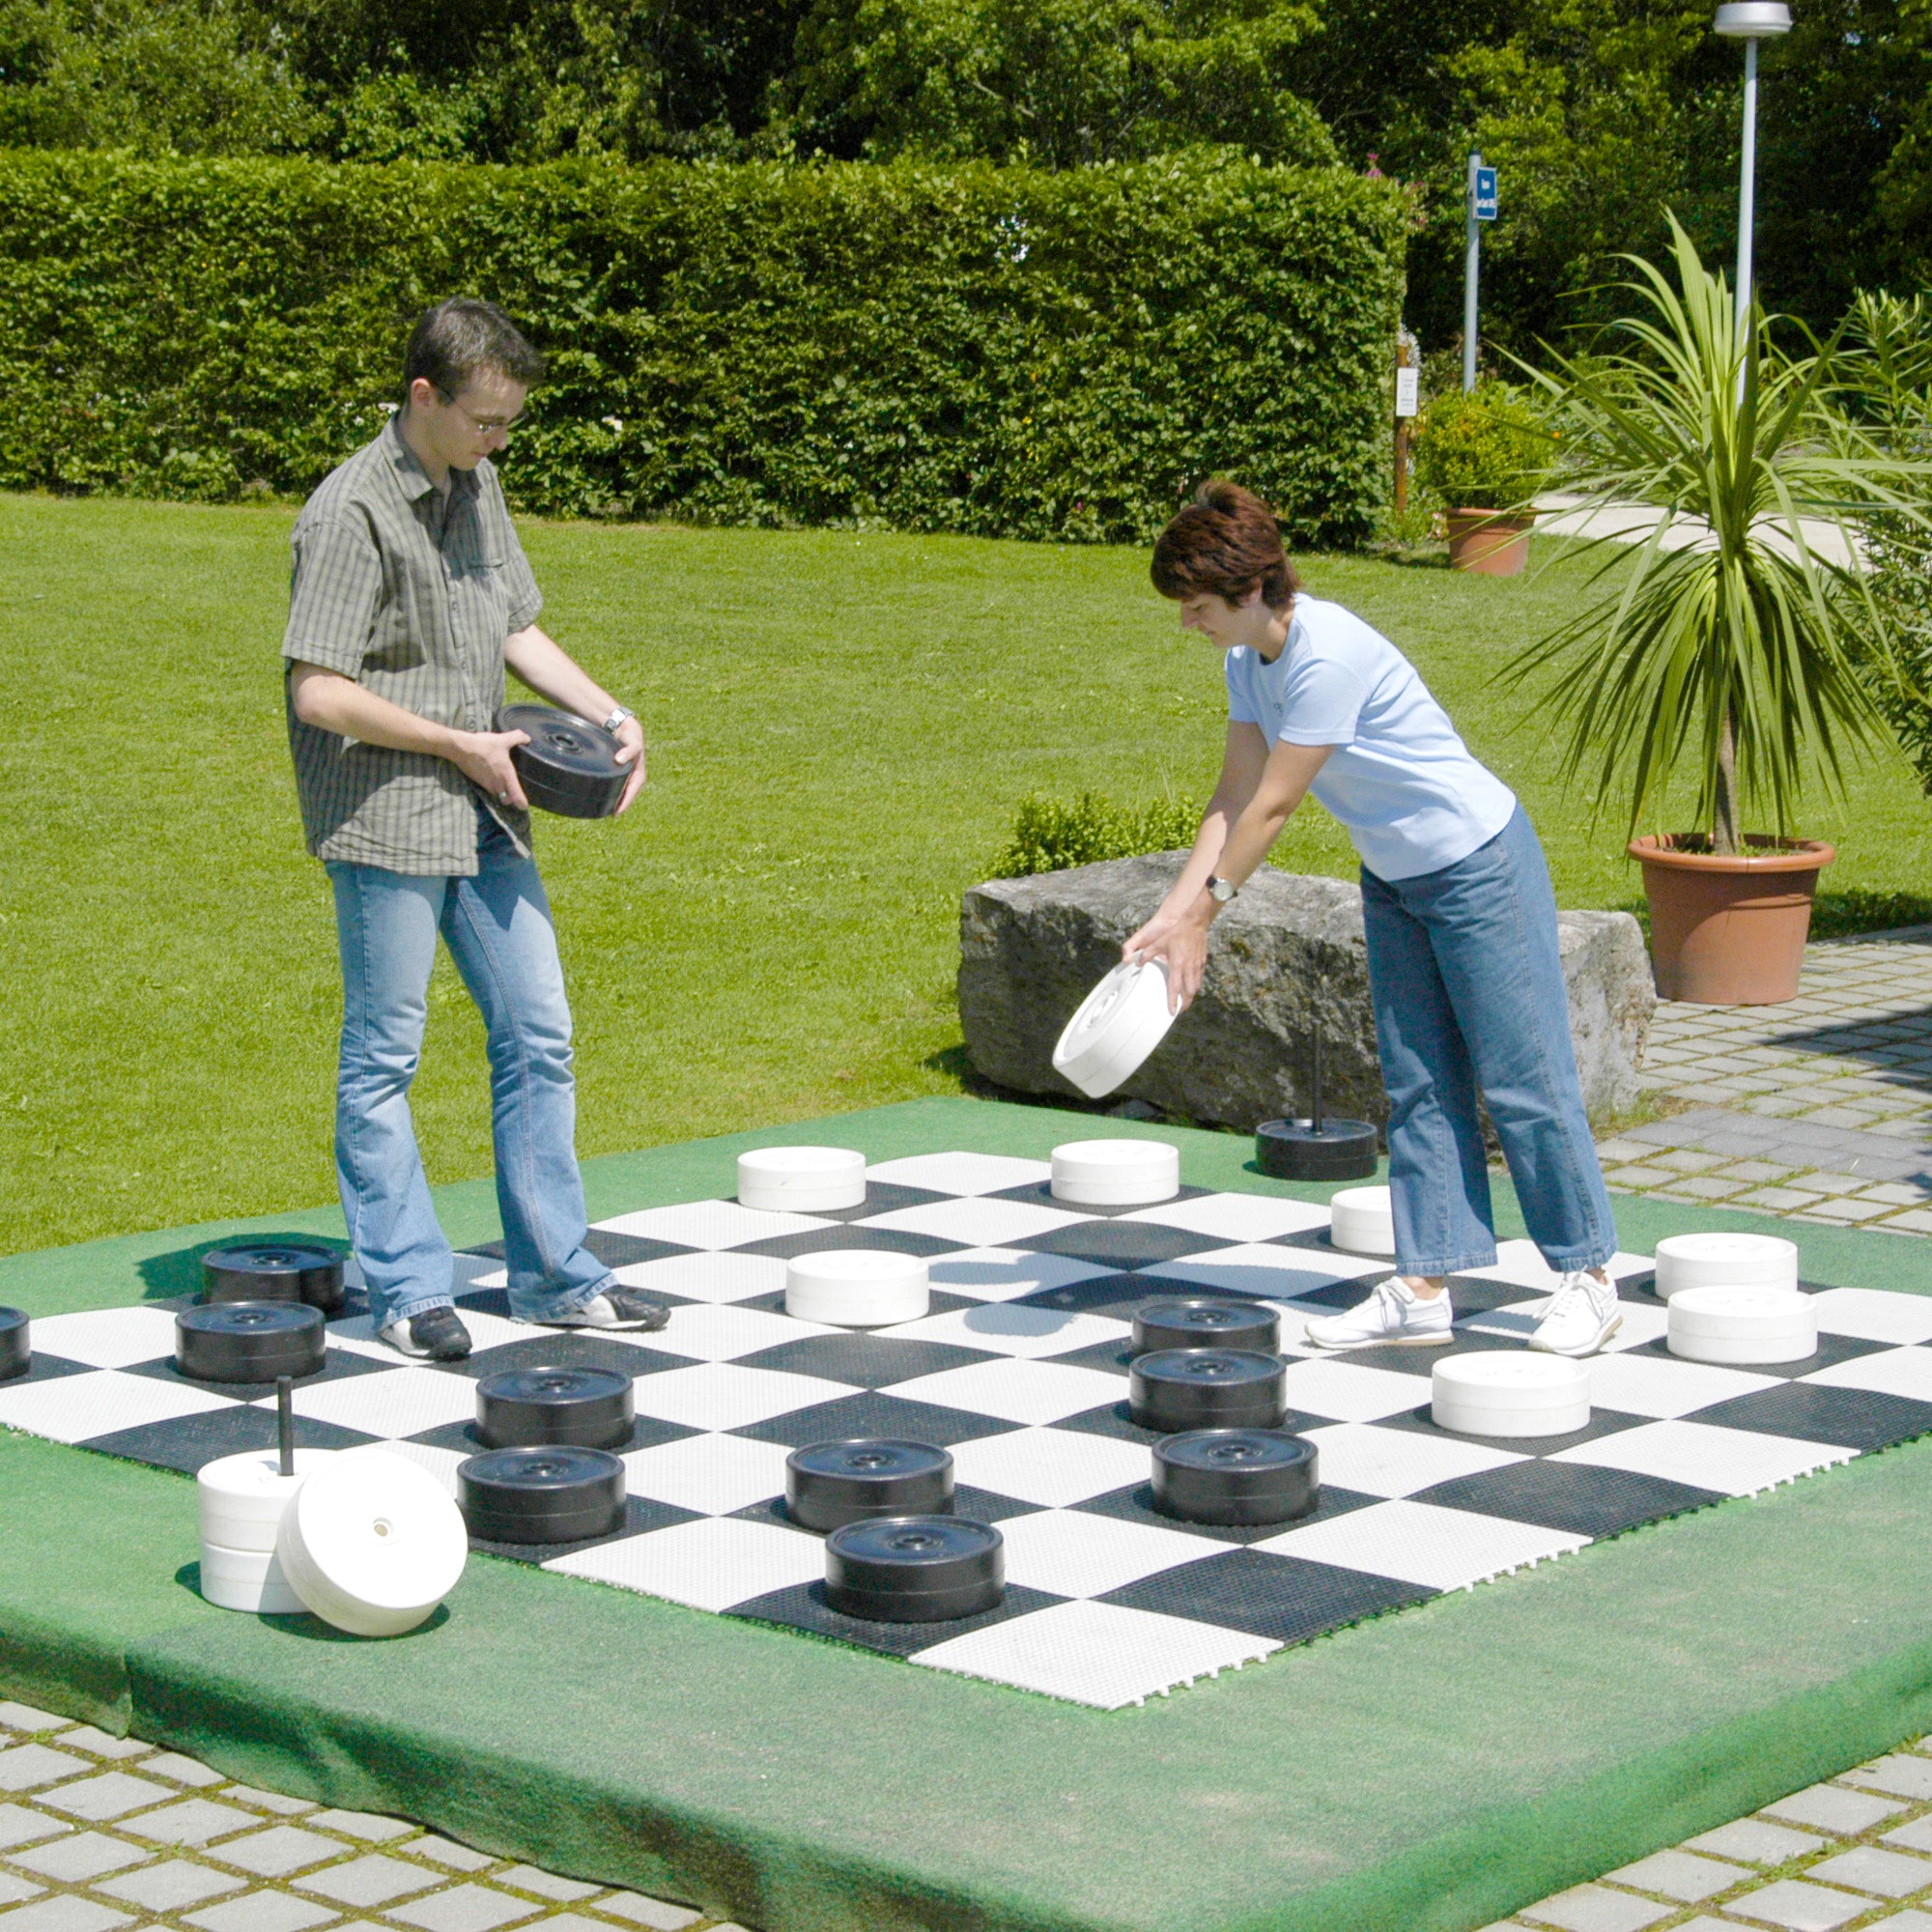 Giant Checker Pieces